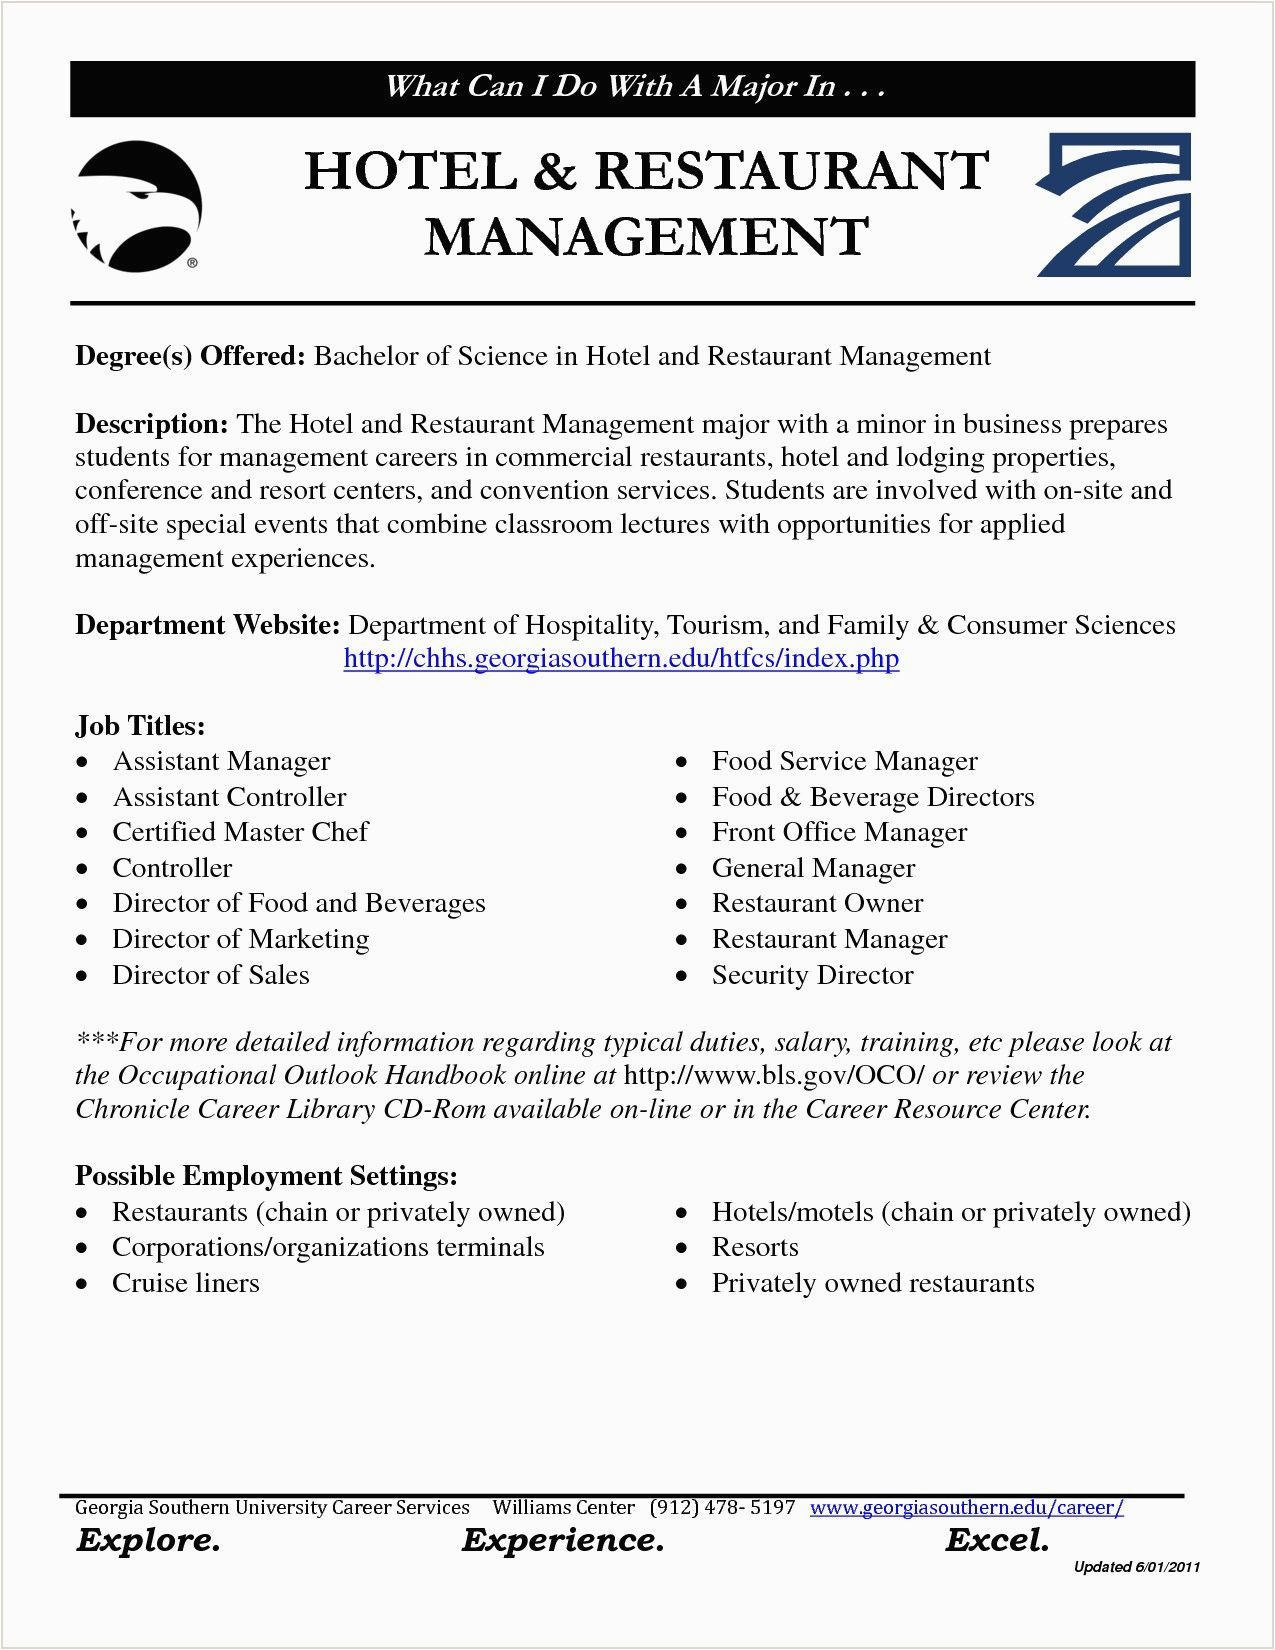 Sample Resume for Hotel and Restaurant Management Ojt Resume format In Word for Hotel Management Fresher Best